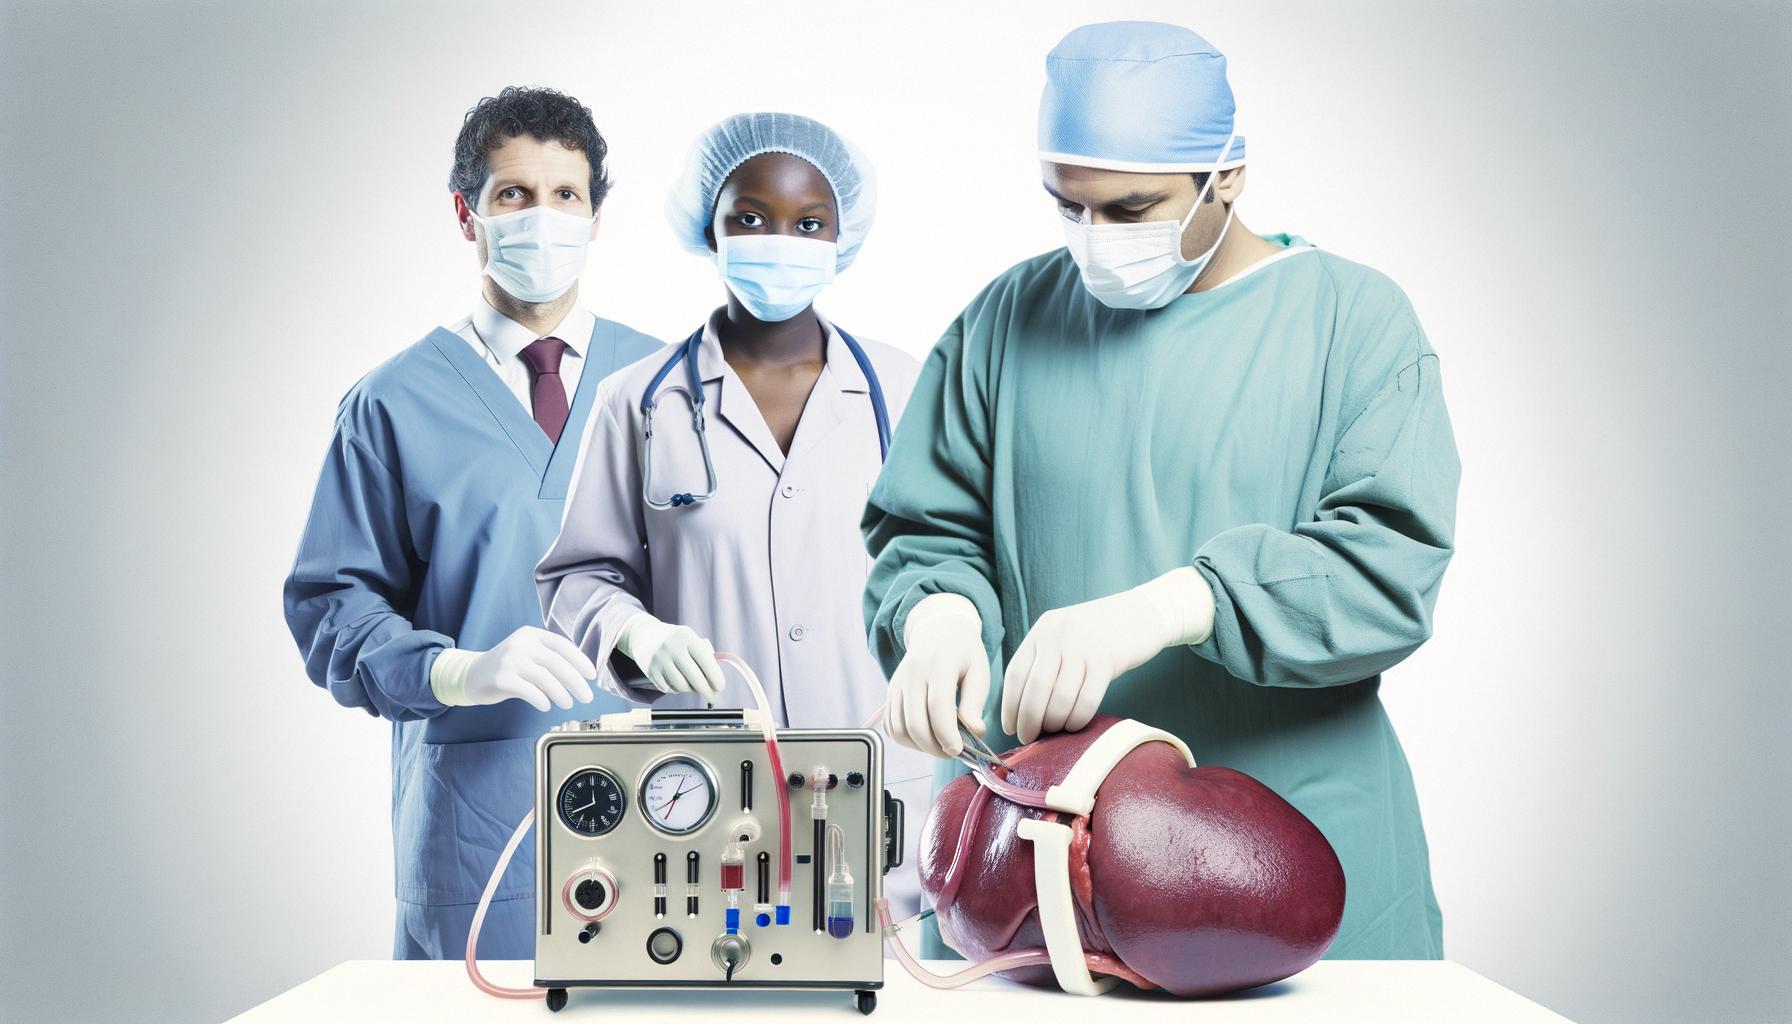 Innovations in organ transplantation are saving lives